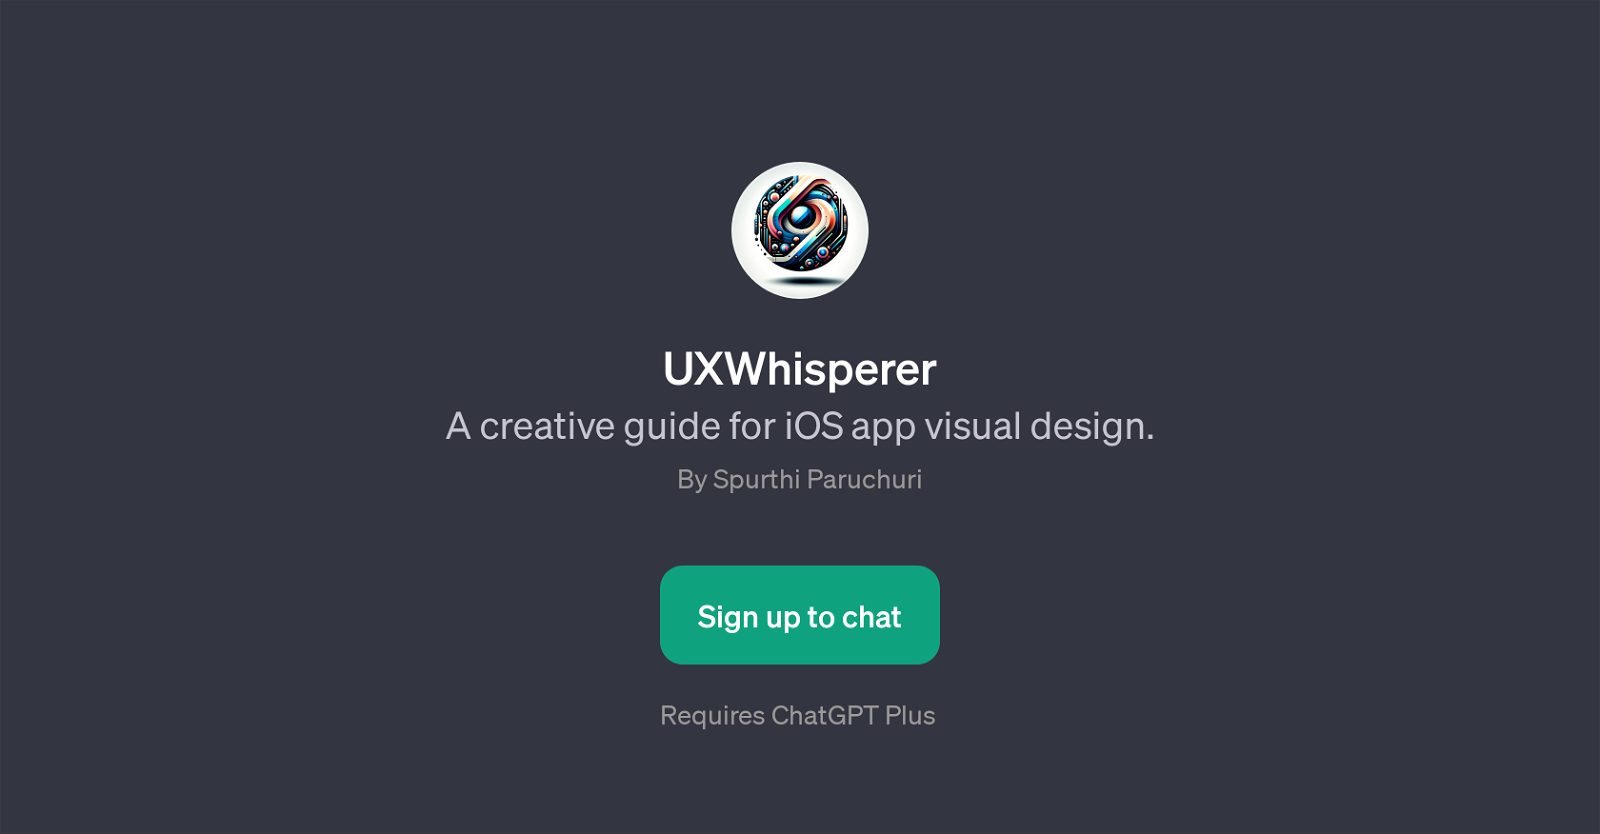 UXWhisperer website